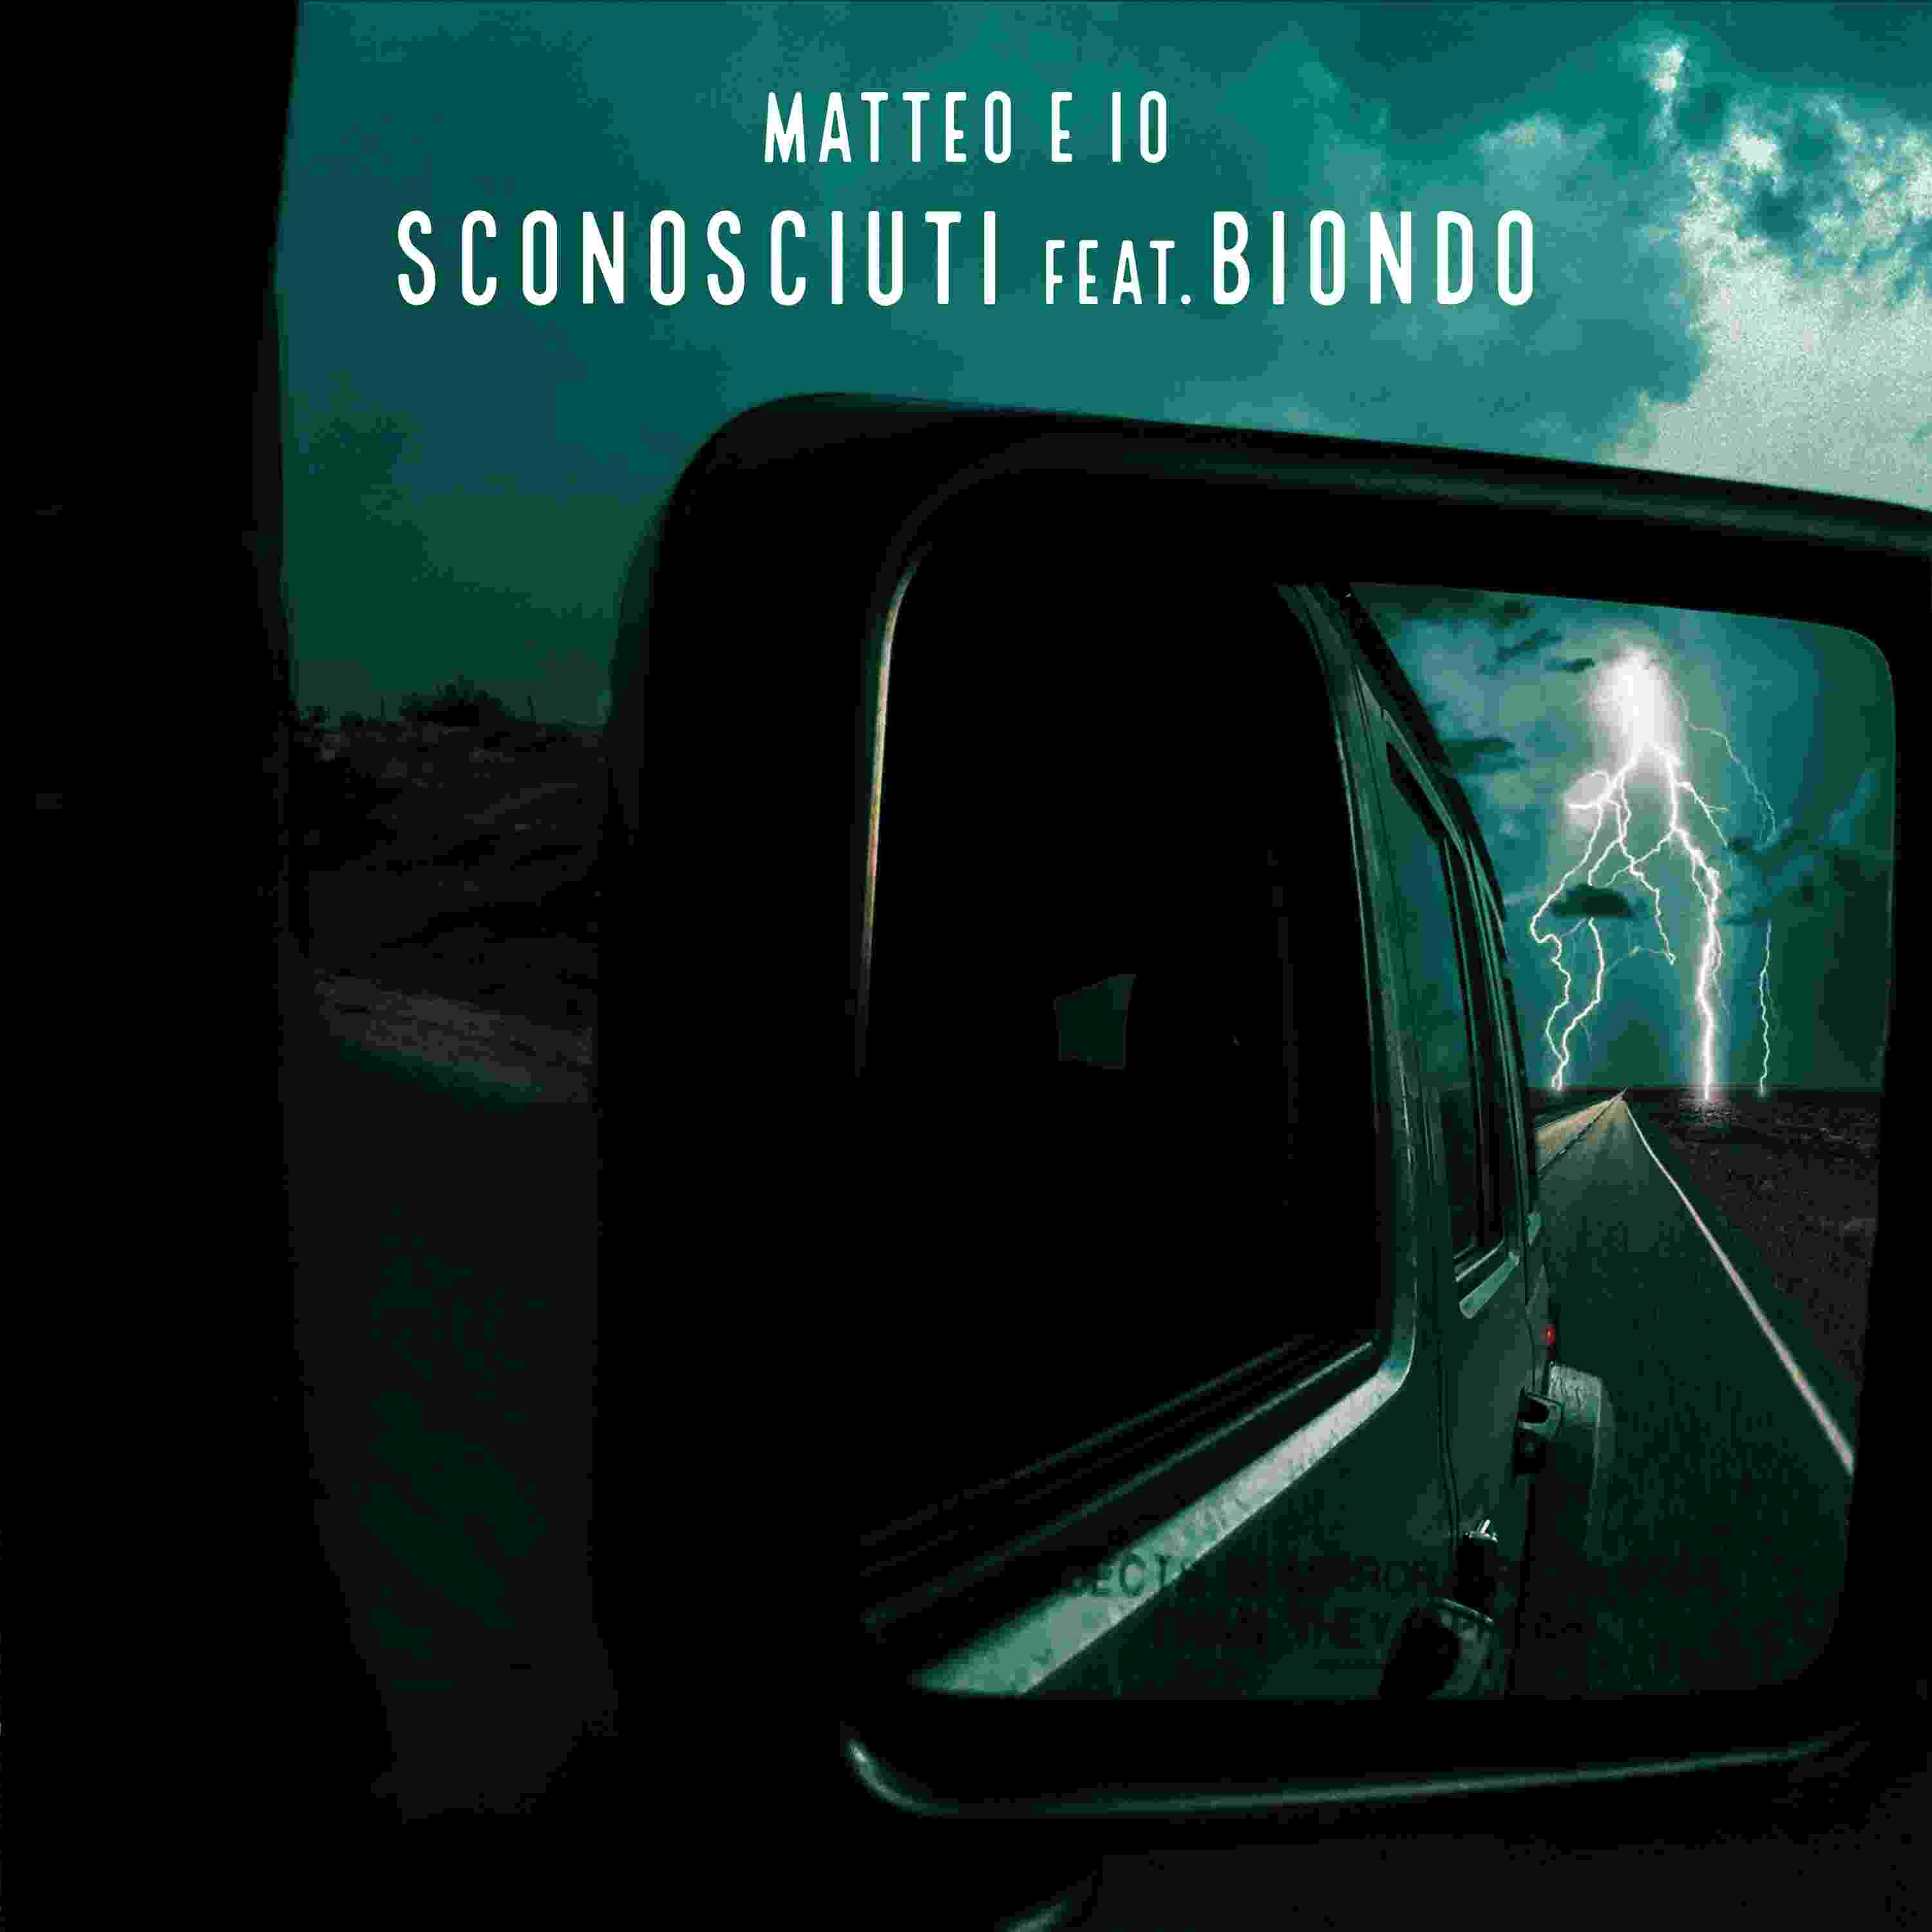 MATTEO E IO feat. Biondo, “Sconosciuti” è il nuovo singolo del cantautore veronese alla ricerca dell’amore vero